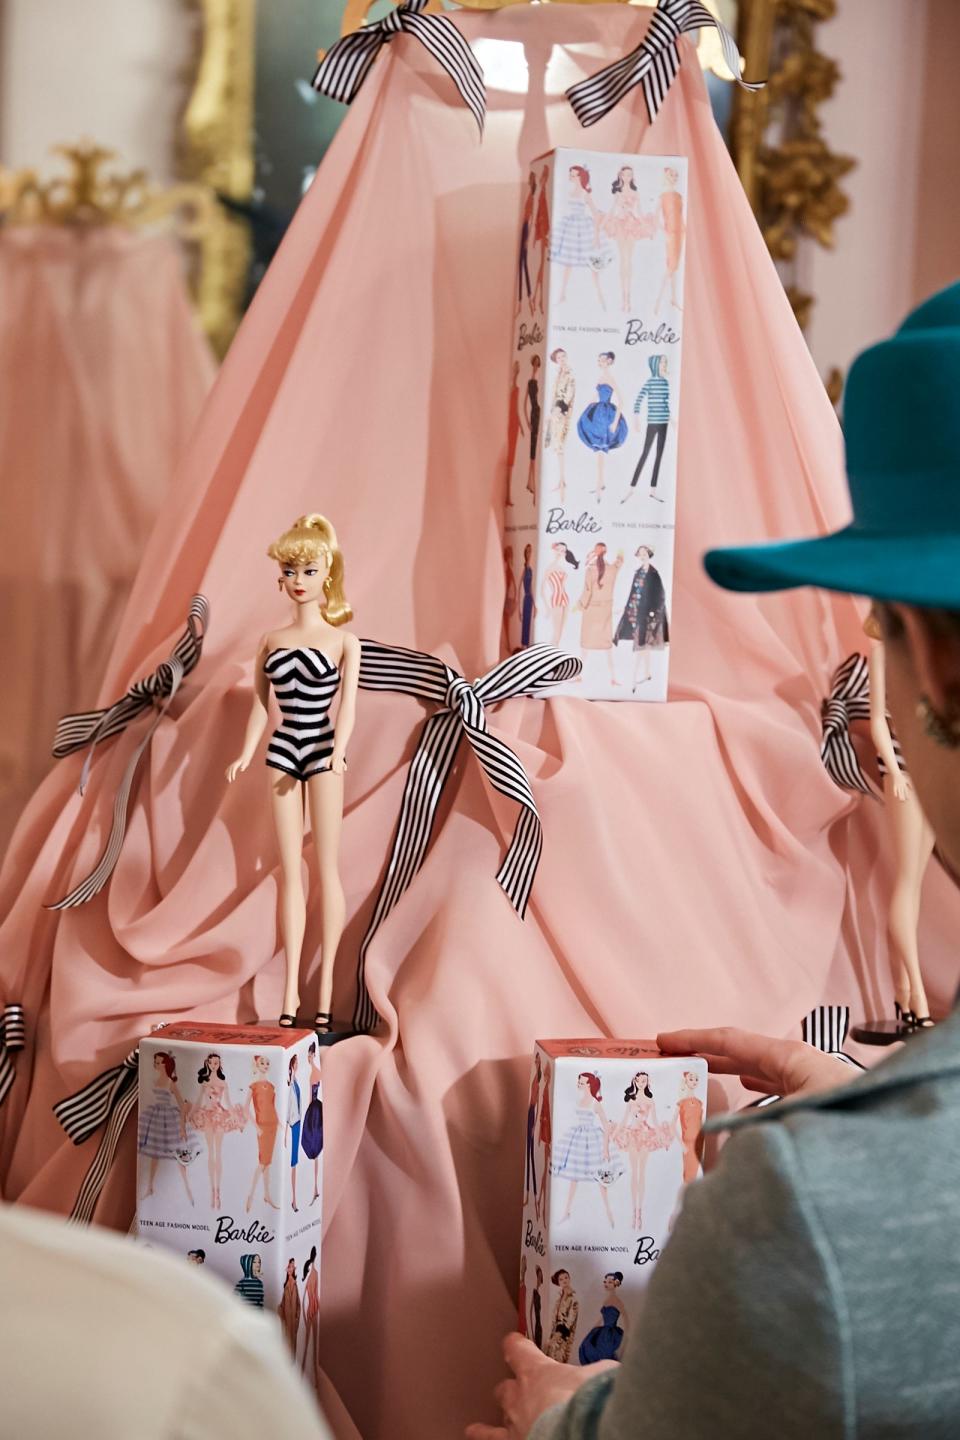 Nach einer geglückten Werbekampagne wird Barbie zum Erfolgsschlager: Über 300.000 Exemplare werden allein im ersten Jahr verkauft!  (Bild: THE HISTORY CHANNEL / A+E Networks)